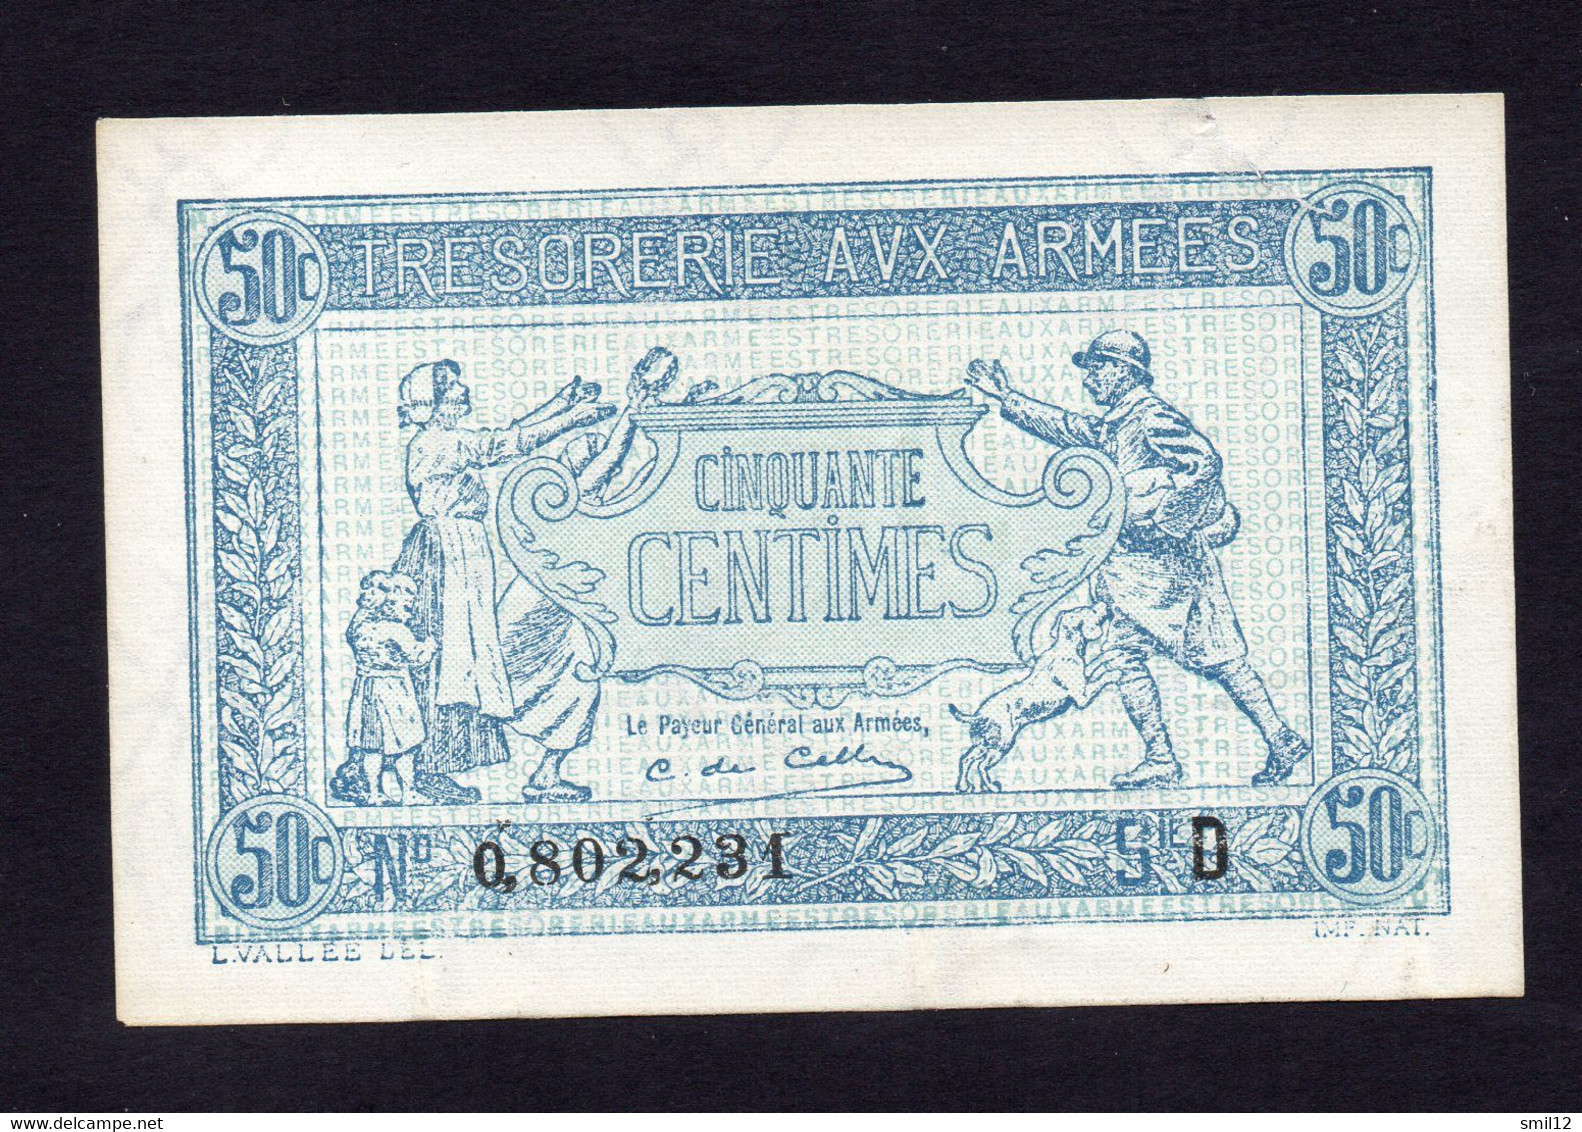 Trésorerie Aux Armées - 50 Centimes - Lettre D -  Etat Neuf Mais Coupure - 1917-1919 Army Treasury